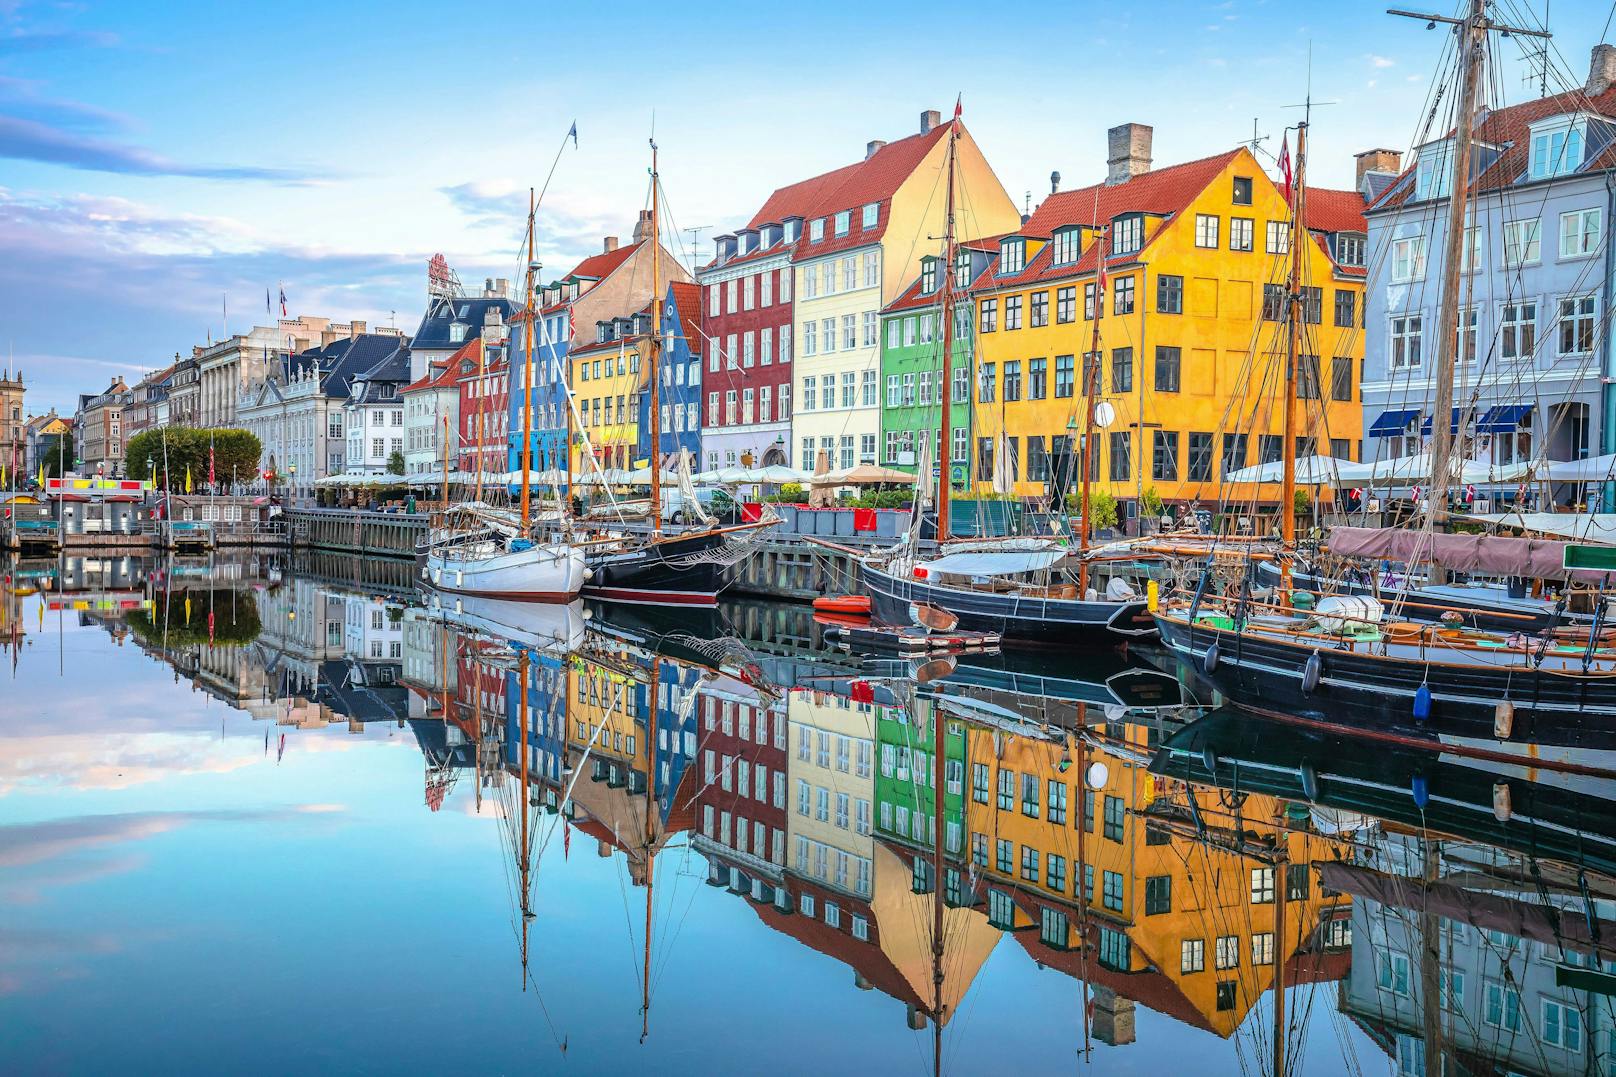 Die Uferpromenade des Kopenhagener Stadtteils Nyhavn wird von farbenfrohen Stadthäusern aus dem 17. und 18. Jahrhunderts gesäumt. Der malerische Ort in Dänemark war einst das Zuhause von Hans Christian Anderson.